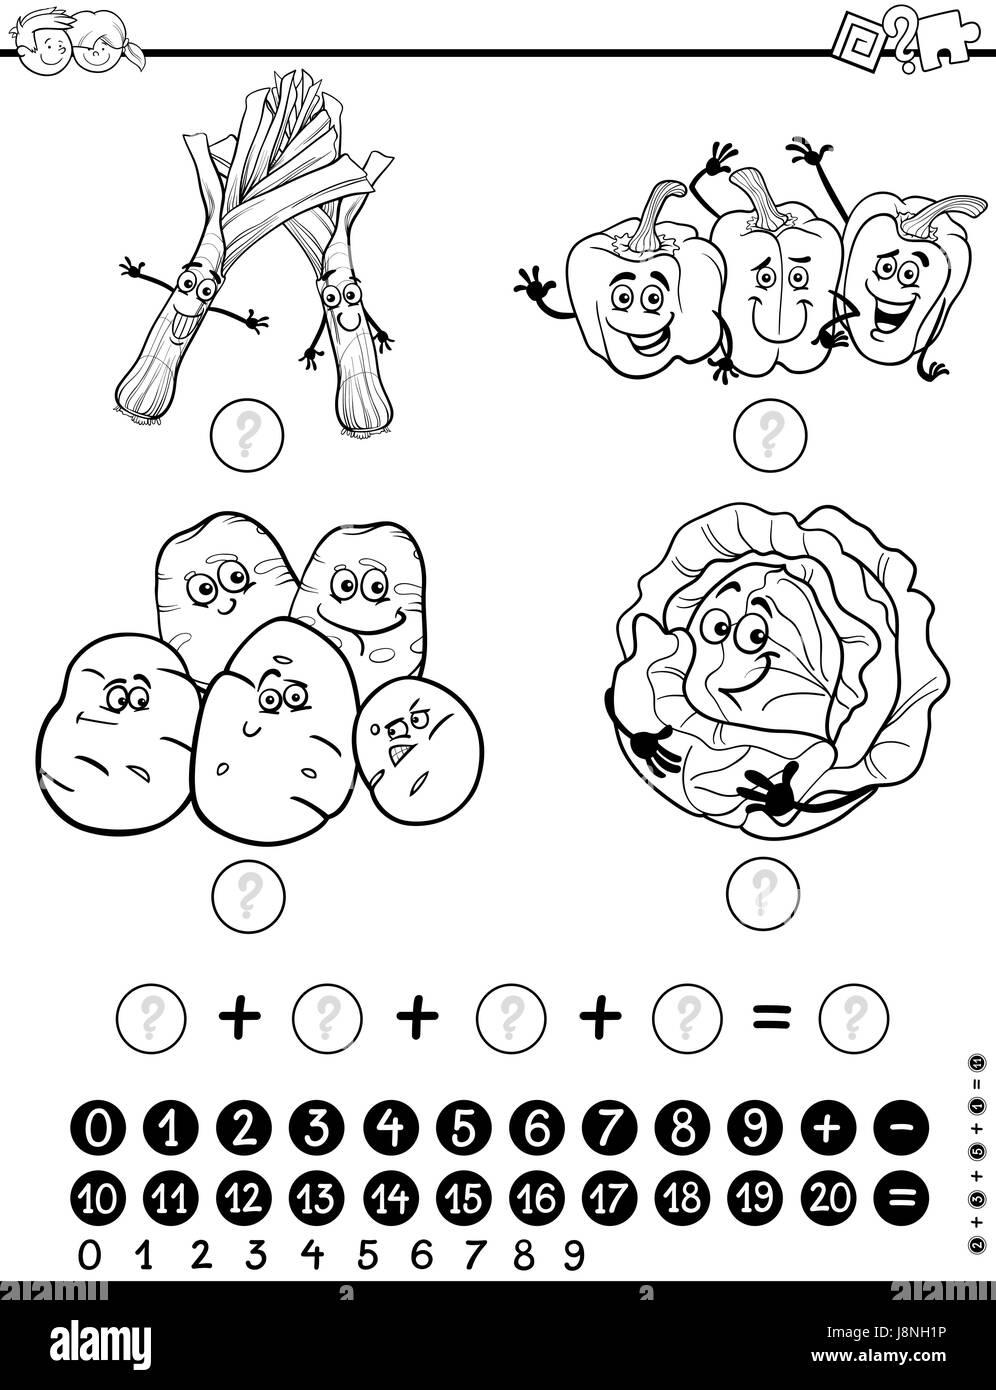 Bianco e Nero Cartoon illustrazione di Educational attività matematica gioco per bambini con gli oggetti alimentari vegetali colorazione Caratteri pagina Illustrazione Vettoriale